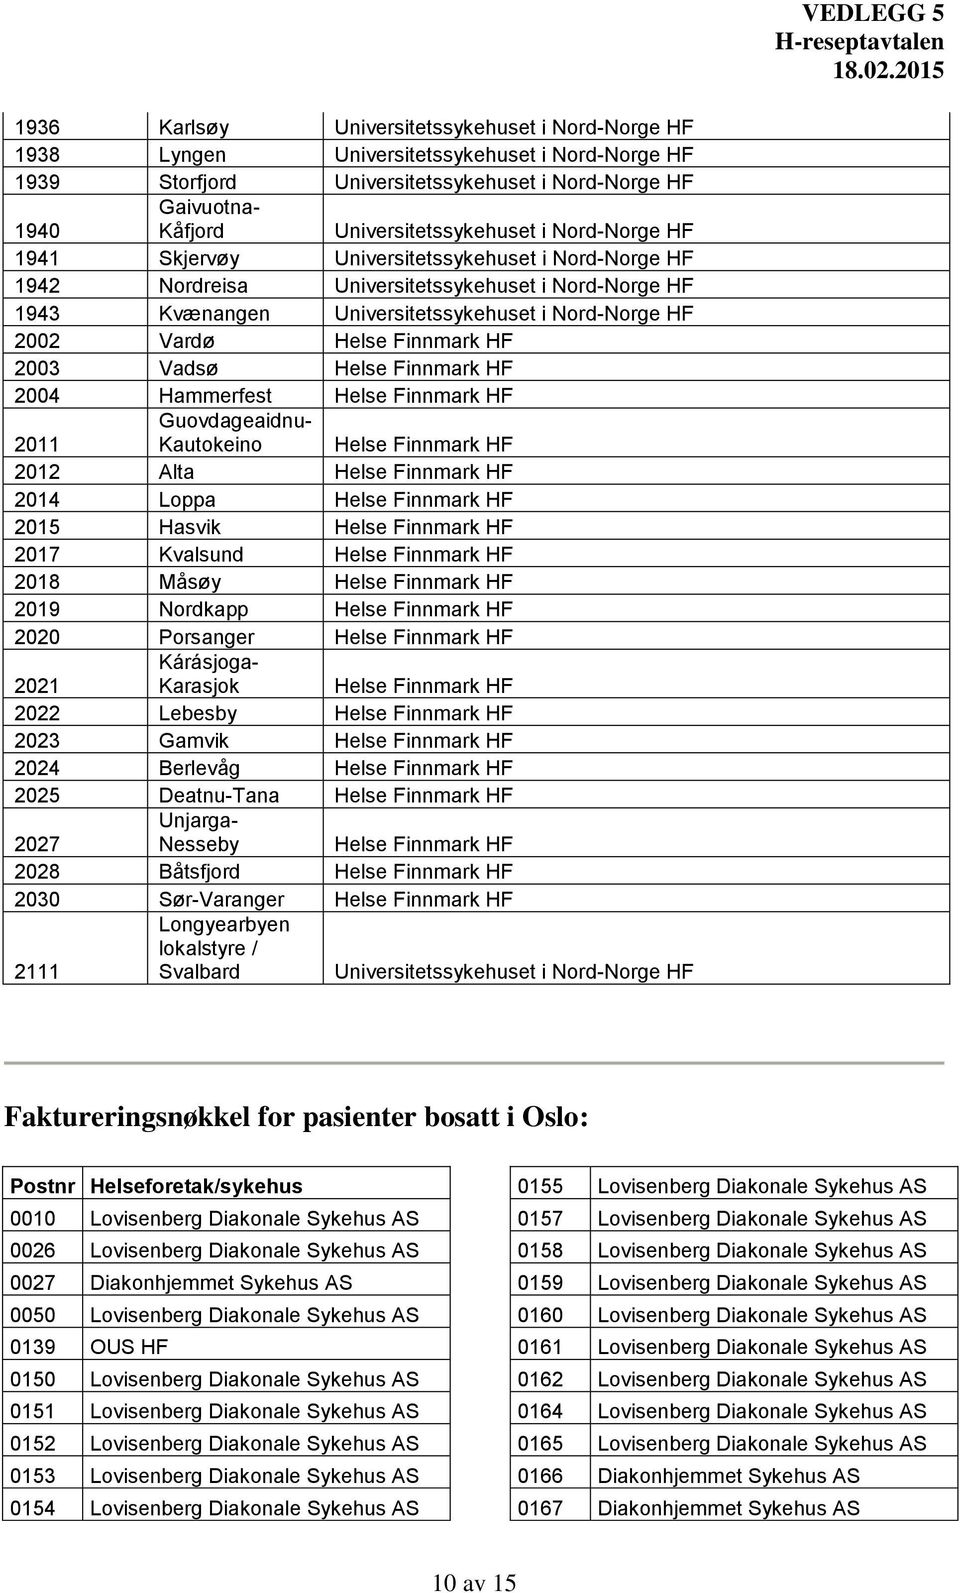 HF 2003 Vadsø Helse Finnmark HF 2004 Hammerfest Helse Finnmark HF 2011 Guovdageaidnu- Kautokeino Helse Finnmark HF 2012 Alta Helse Finnmark HF 2014 Loppa Helse Finnmark HF 2015 Hasvik Helse Finnmark